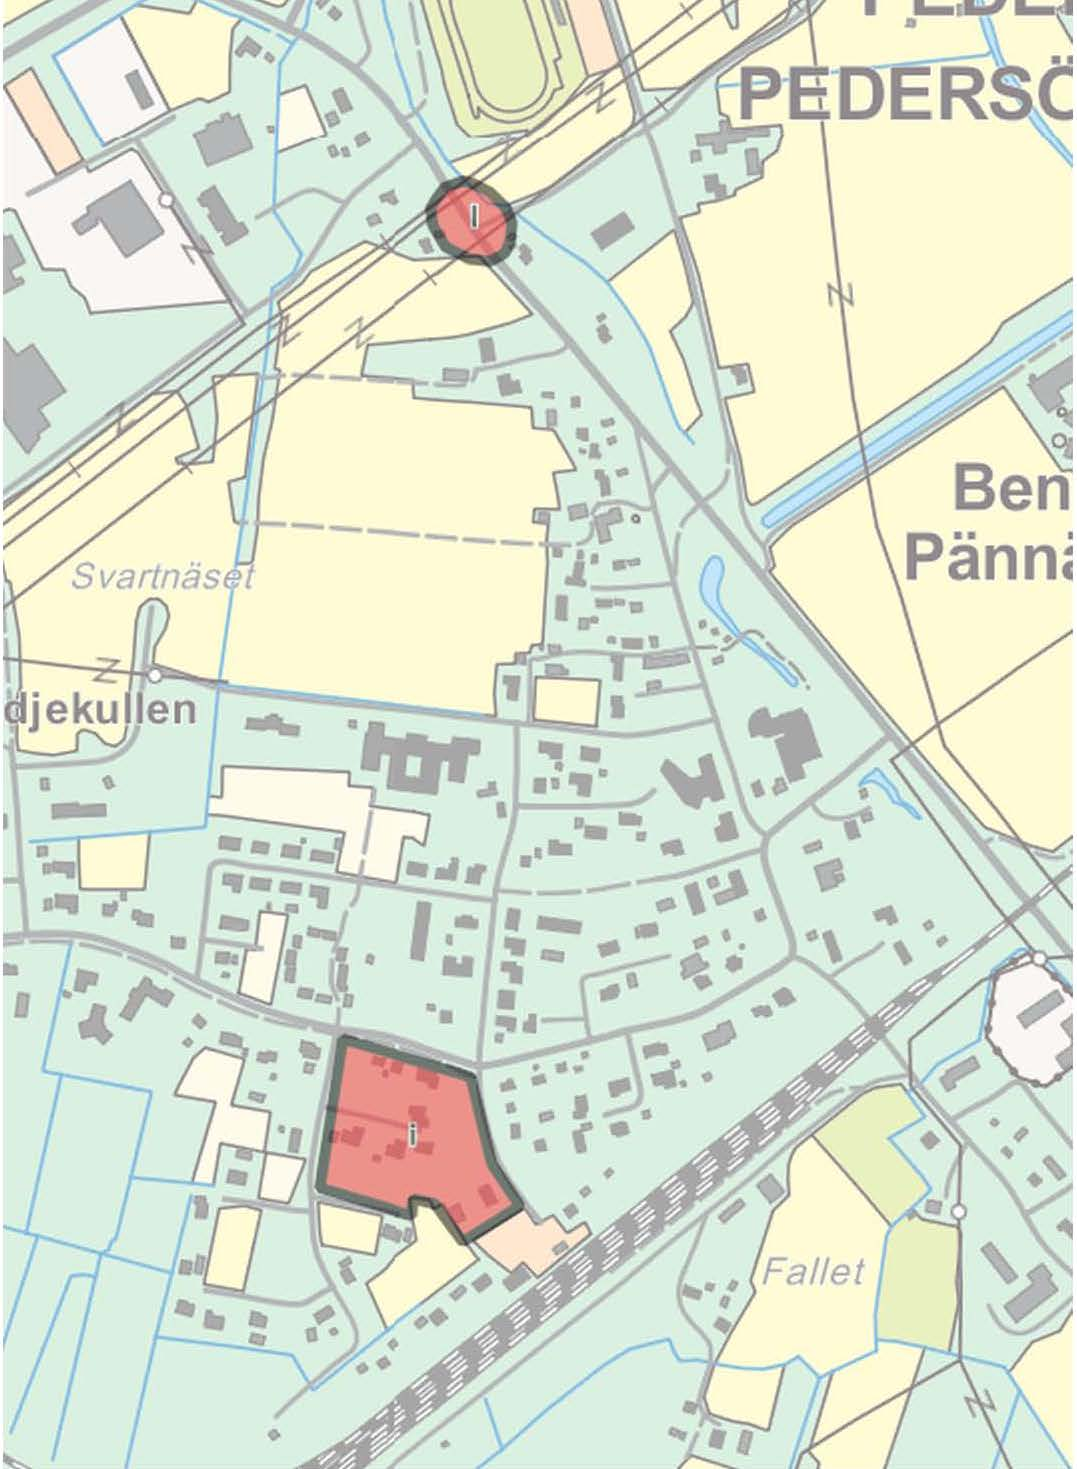 m) Kolpin teollisuusalueen asemakaavan laajennus Pedersören kunta osti vuoden 2015 lopussa alueen, joka sijaitsee Kolpin asemakaavoitetun teollisuusalueen